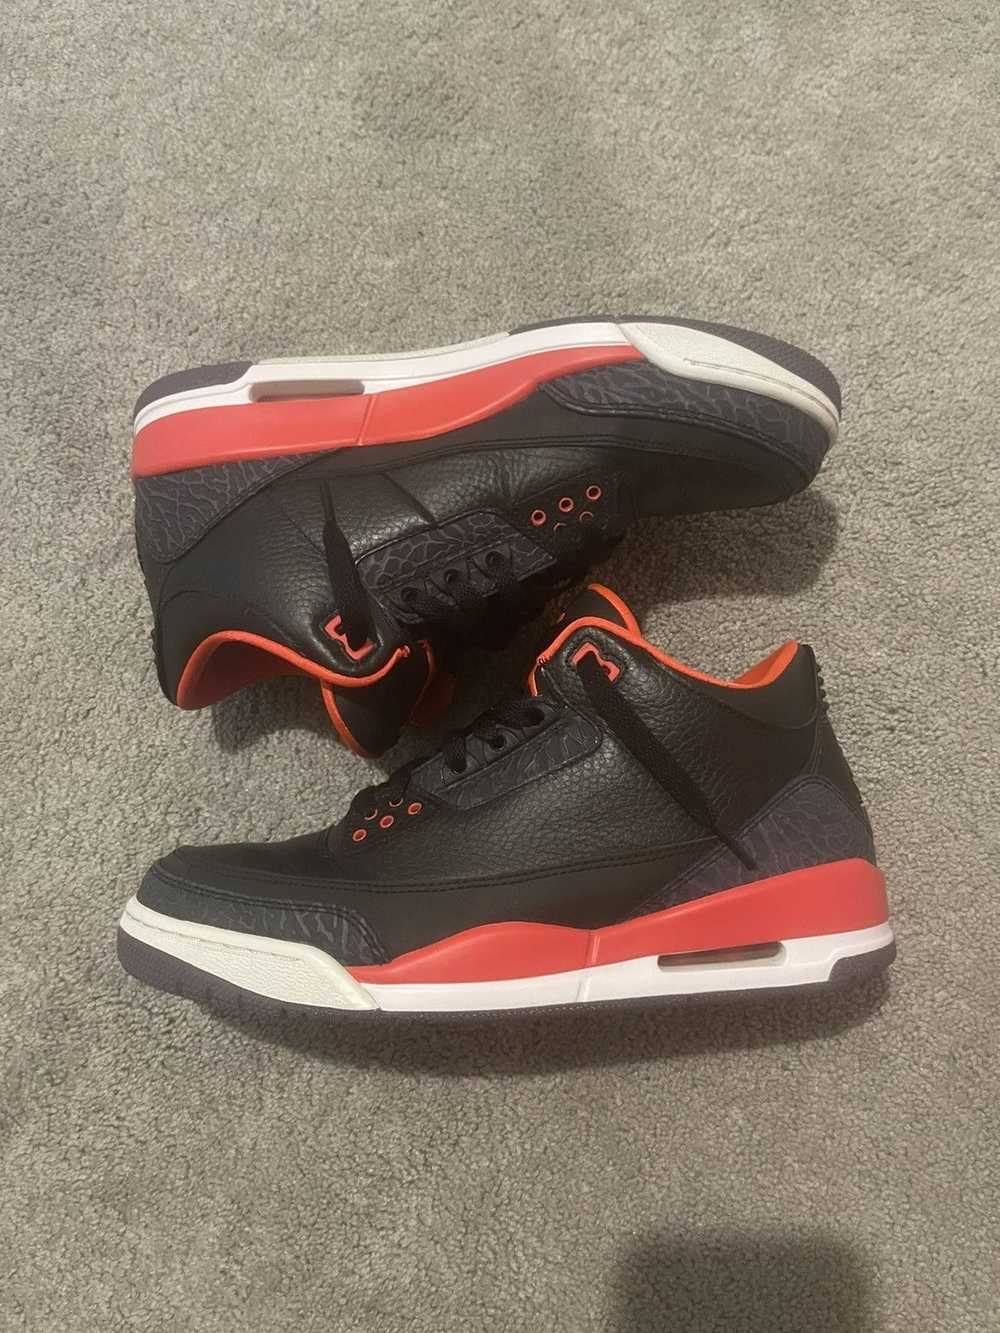 Jordan Brand × Nike Jordan 3 Crimson - image 2